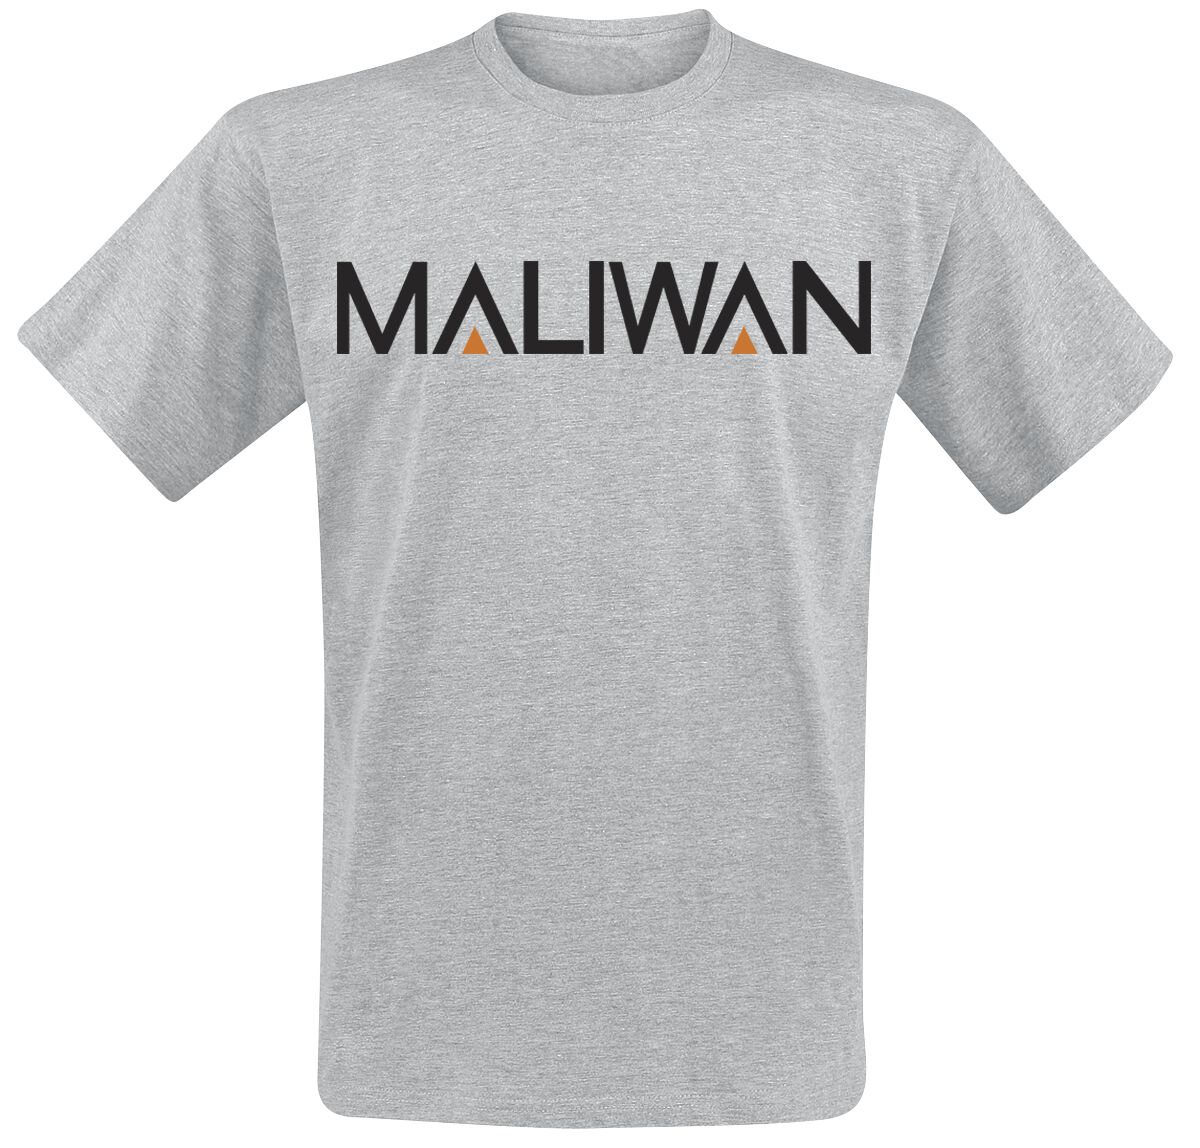 Borderlands - Gaming T-Shirt - 3 - Maliwan - S bis XXL - für Männer - Größe XXL - grau meliert  - EMP exklusives Merchandise!